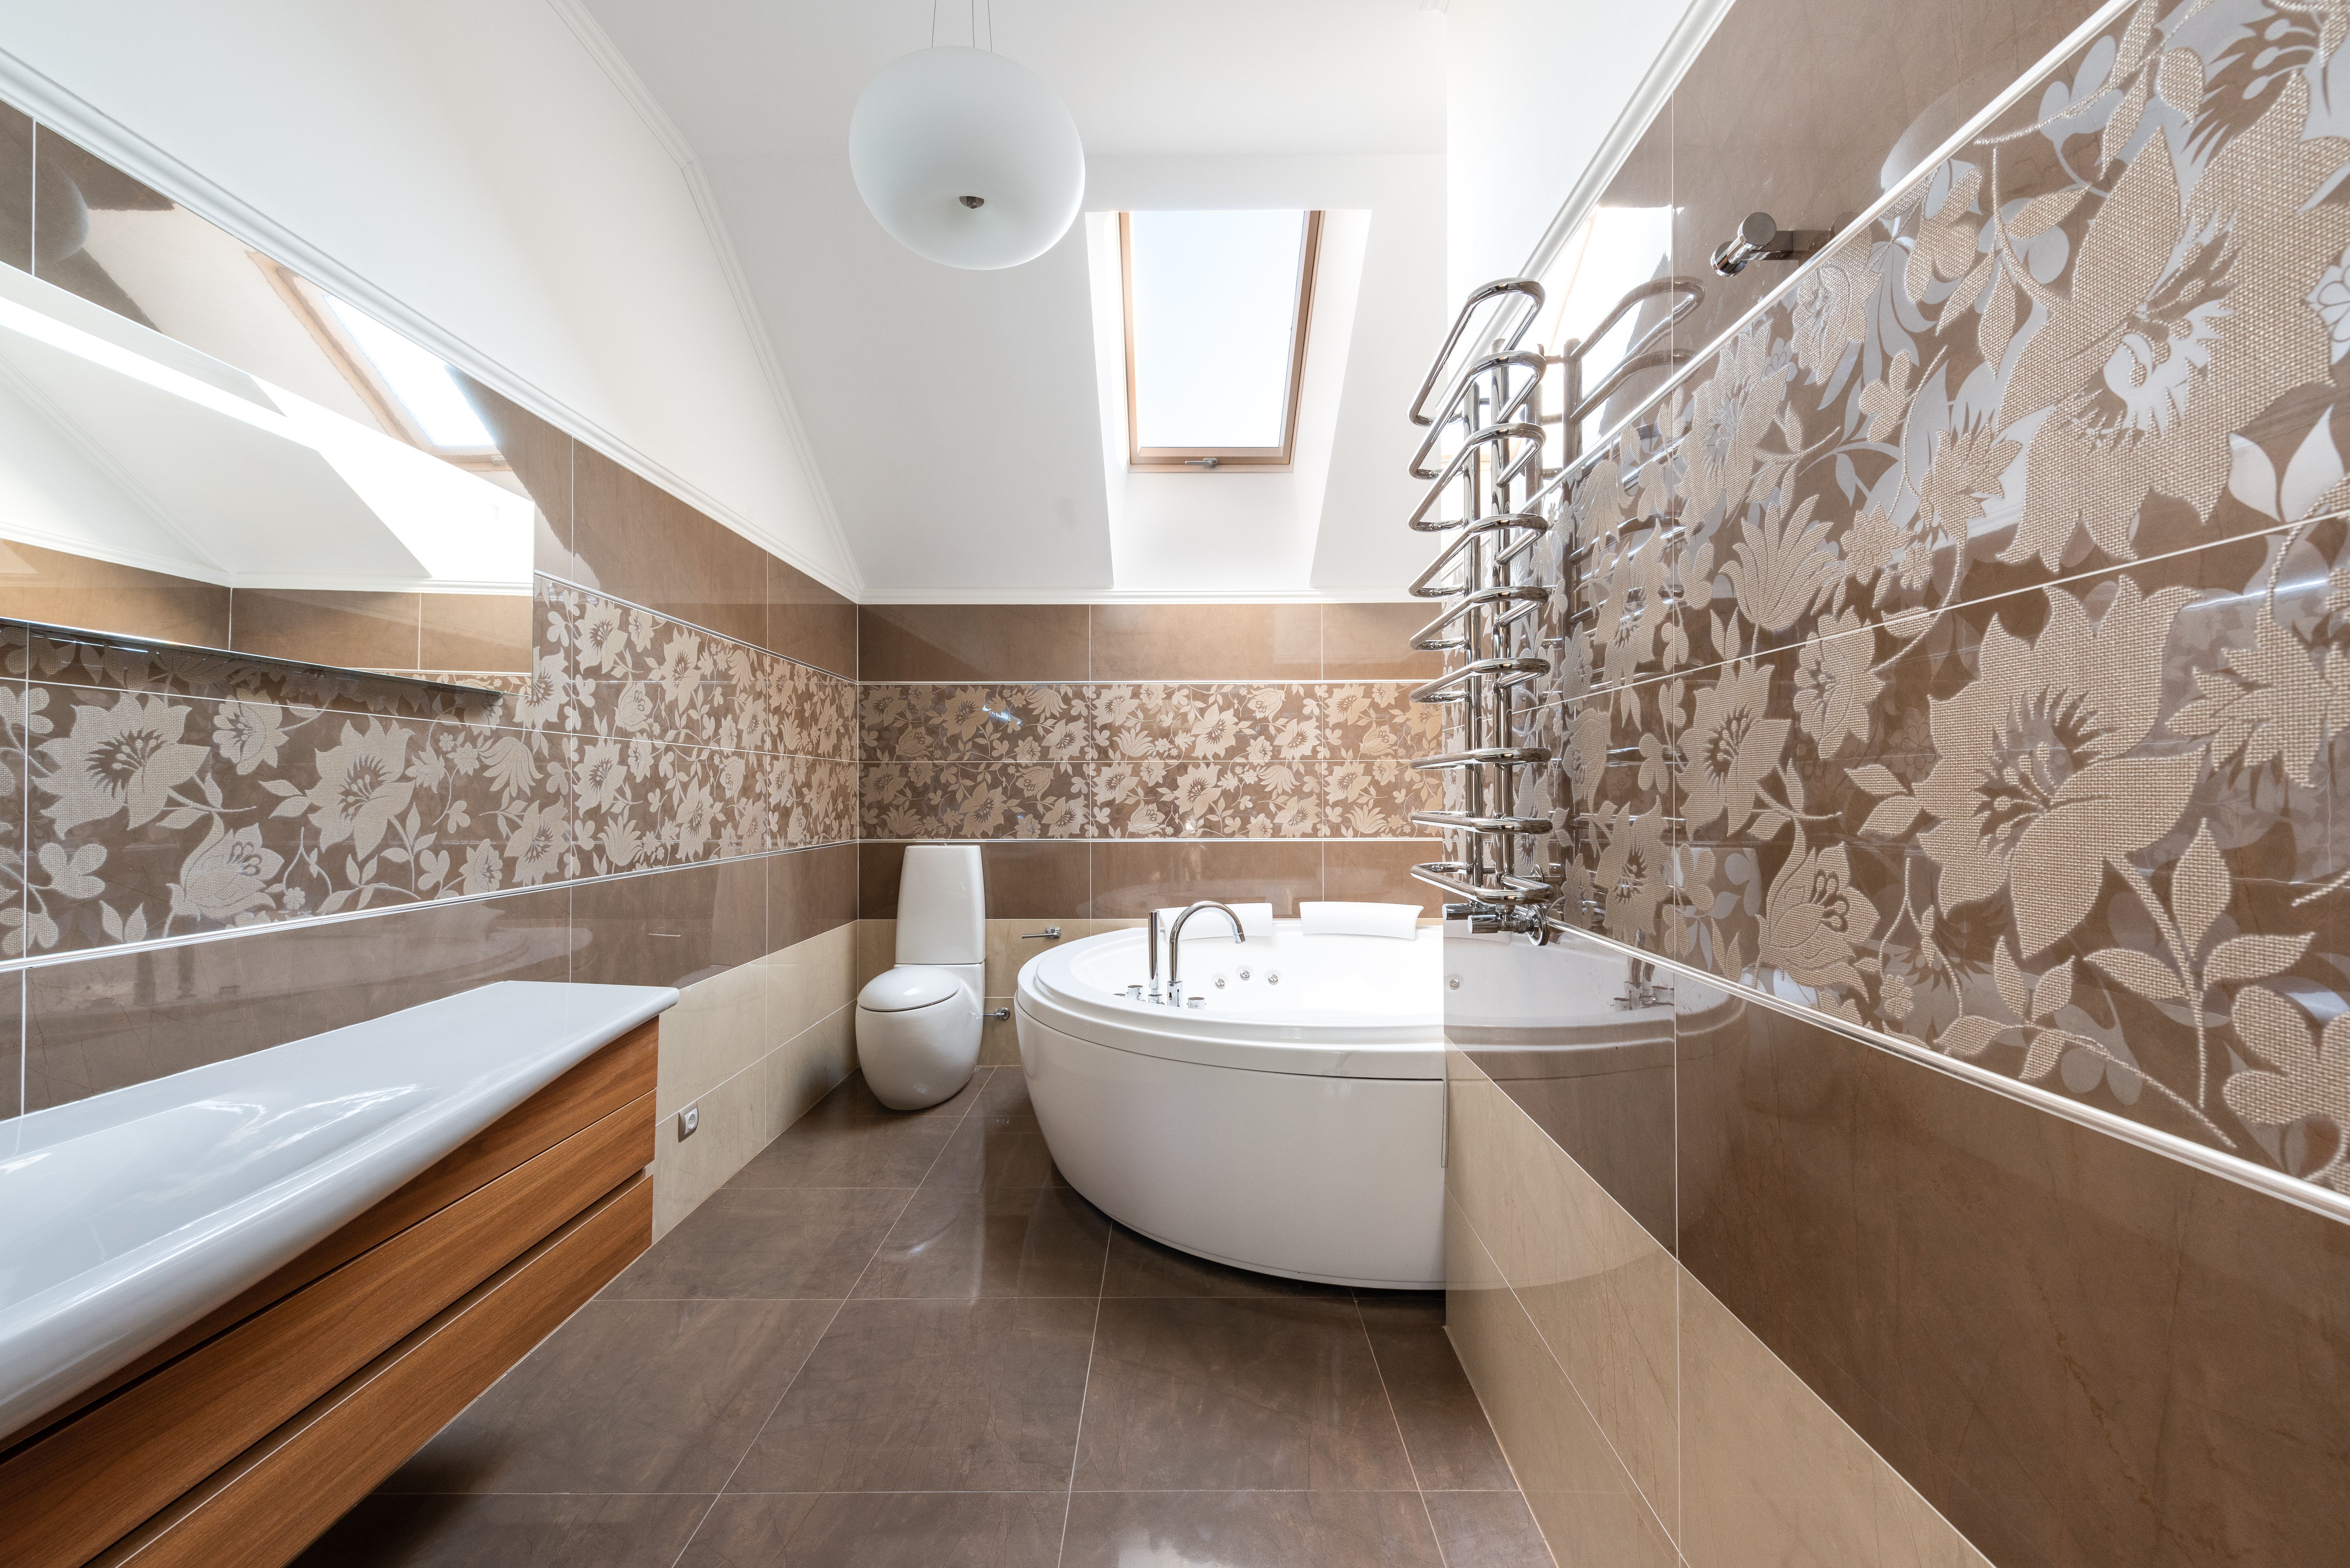 Salle de bain avec carrelage mural à motifs marron clair. La baignoire est grande et blanche, le lavabo est blanc et marron clair.